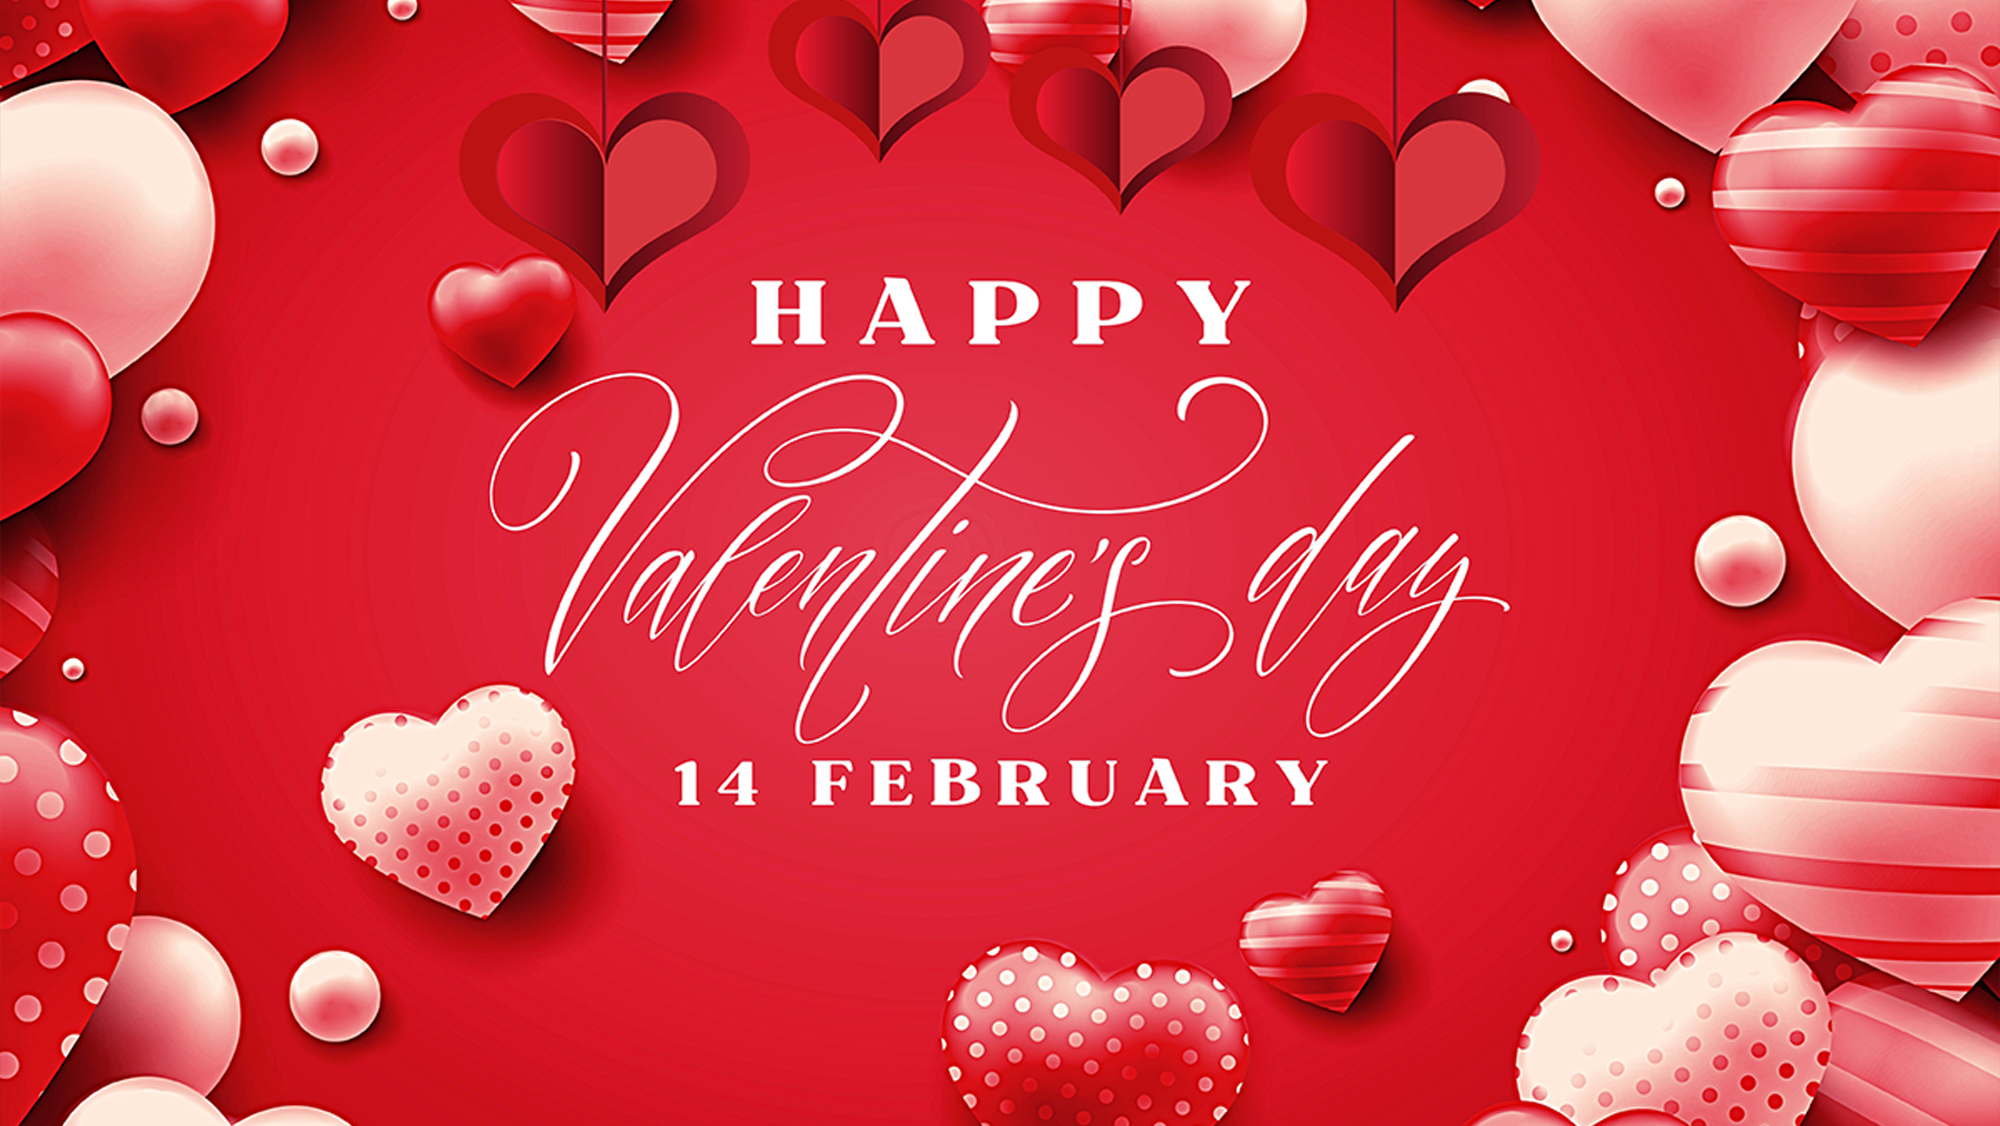 Романтичные открытки для любимой девушки или жены на День всех влюбленных 2018: скачать бесплатно